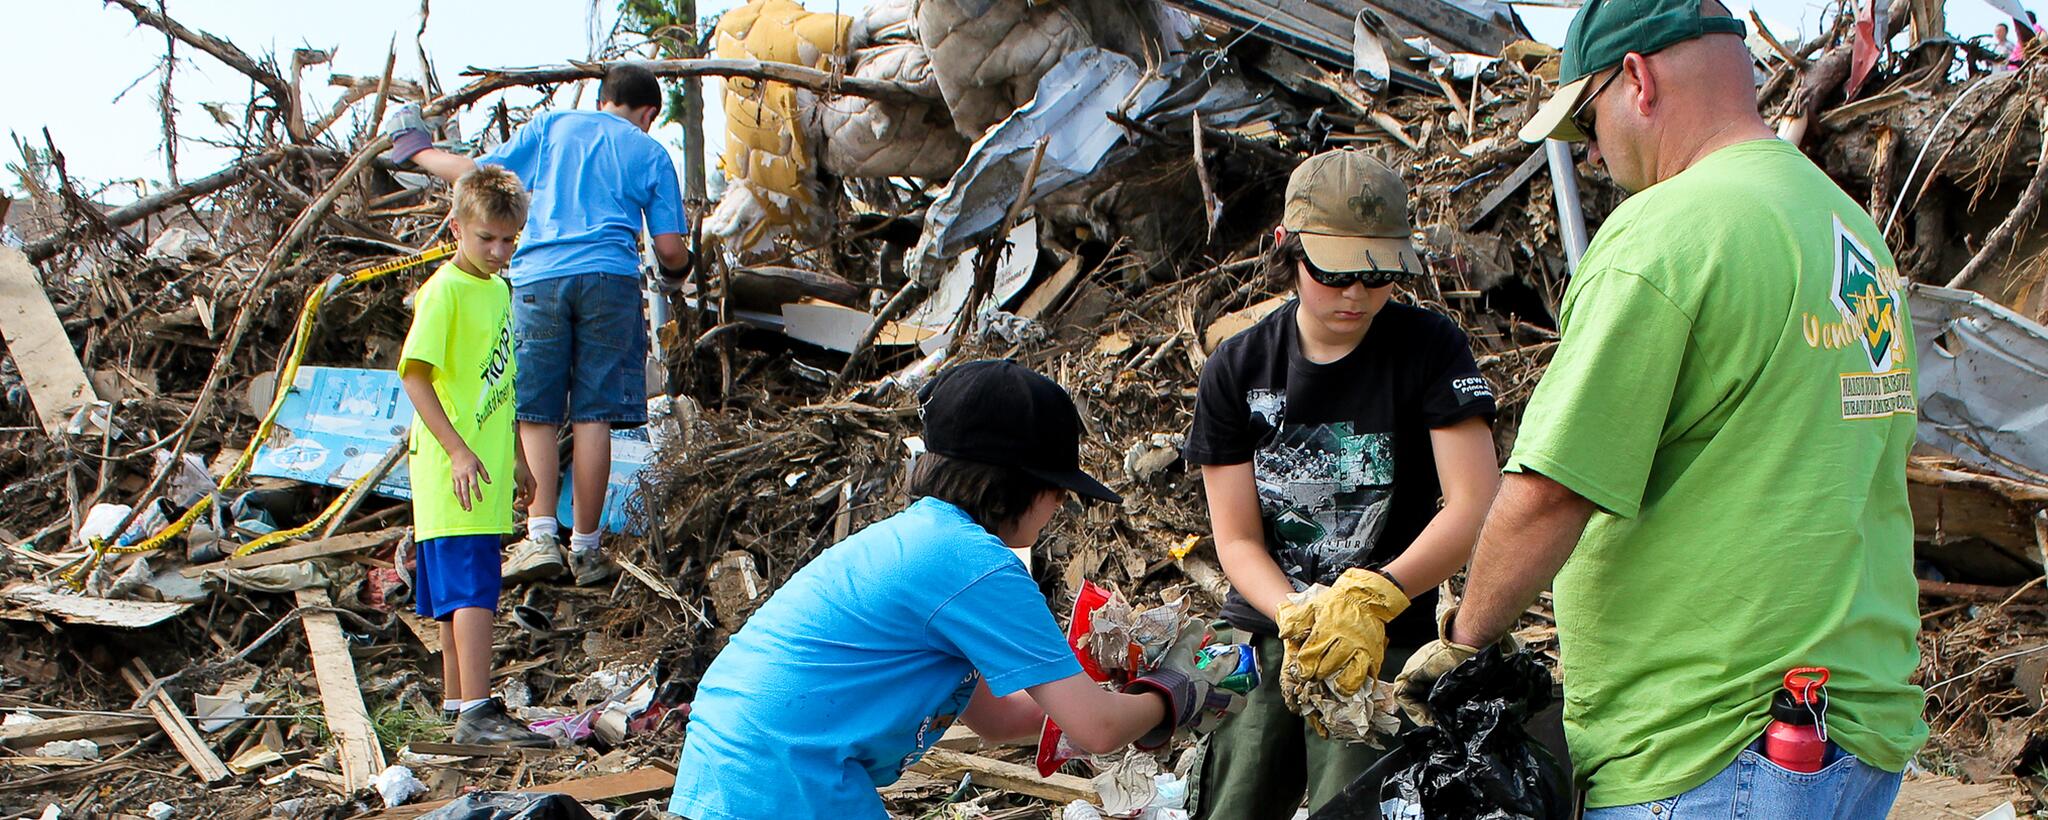 Niños exploradores y su líder recogiendo escombros de sus casas destrozadas